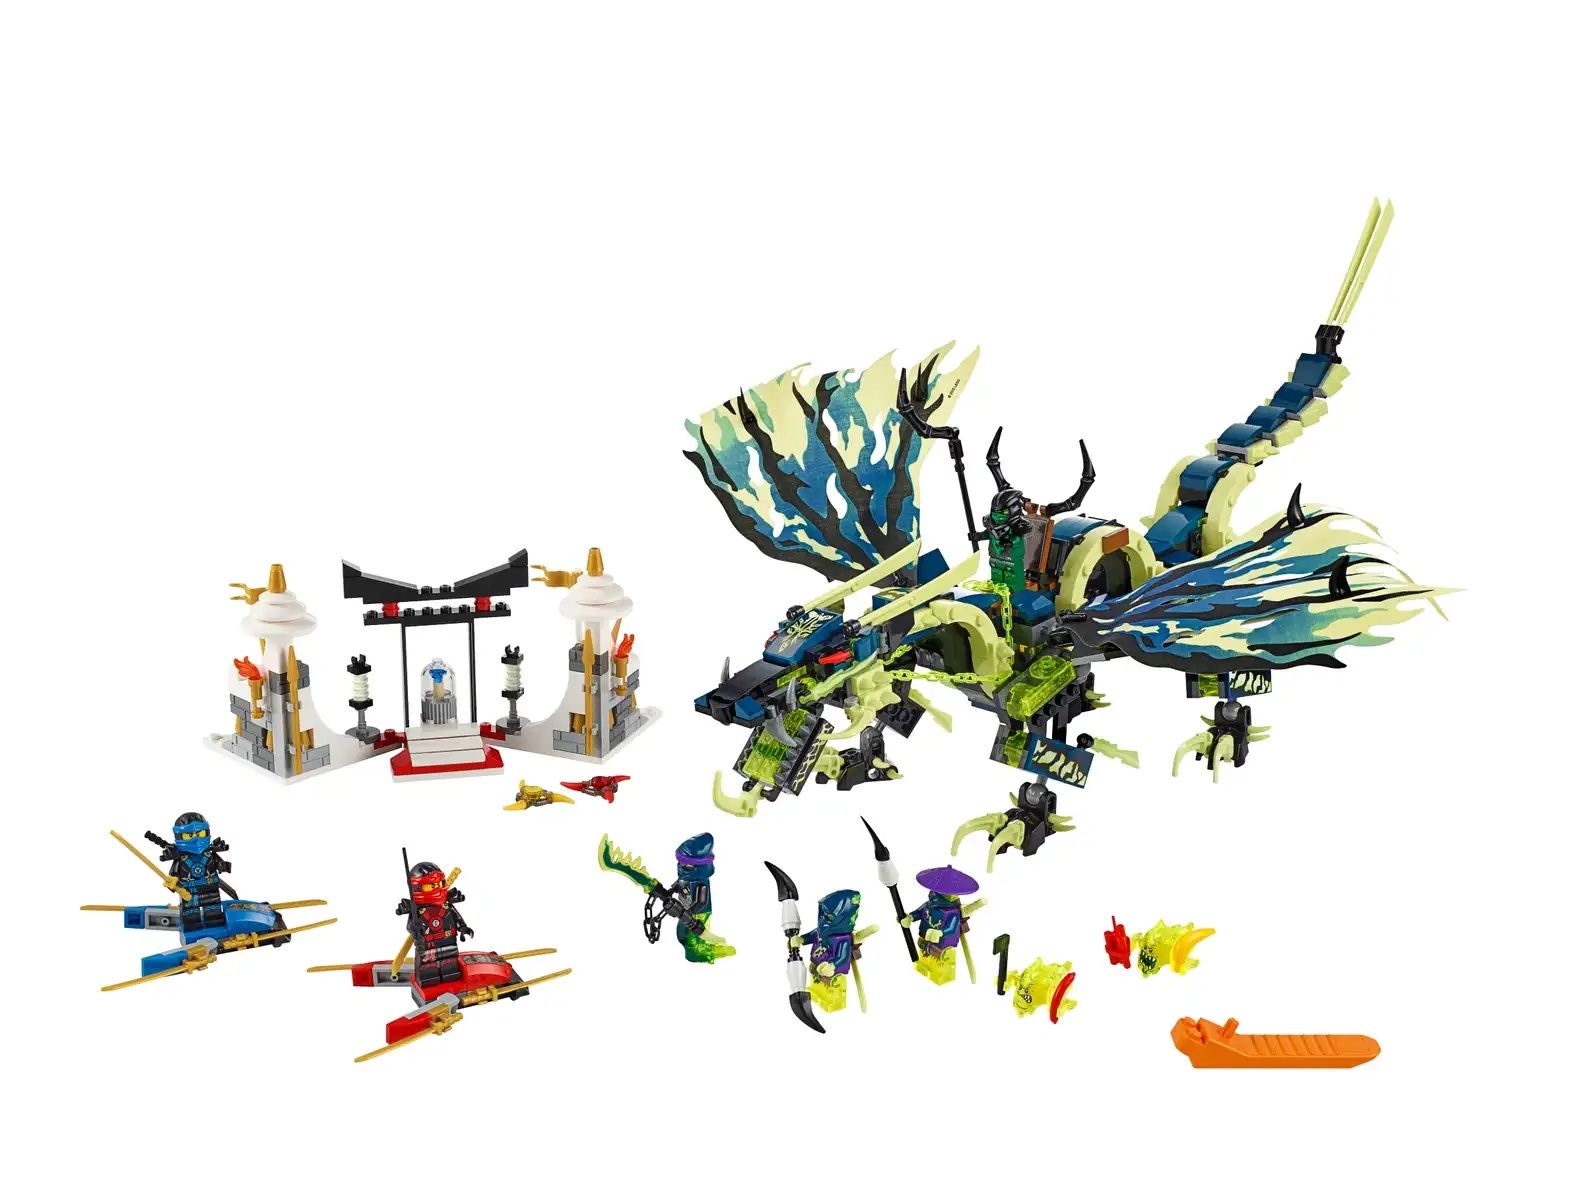 Lego Ninjago Attack of the Morro Dragon 70736